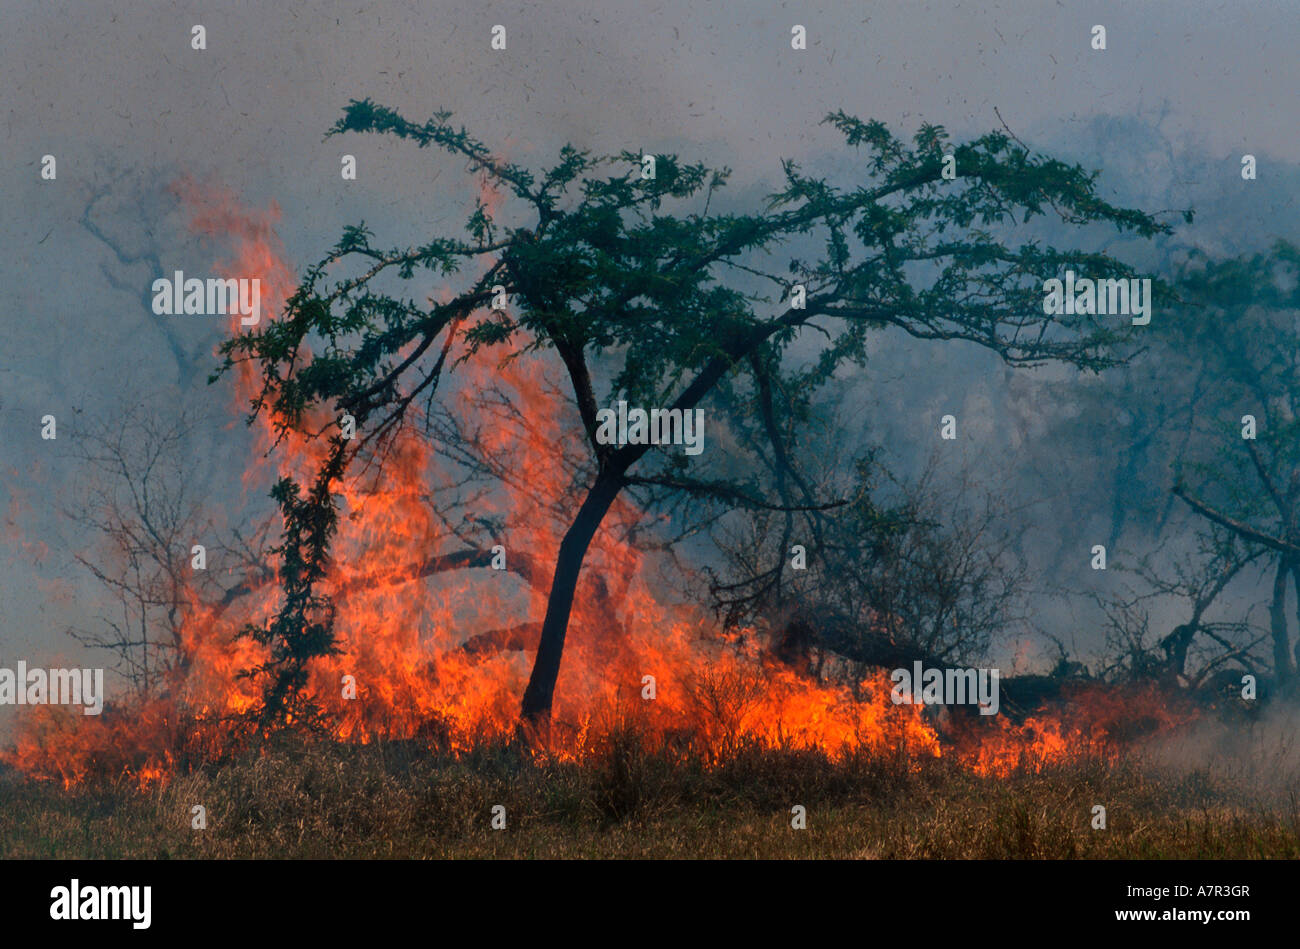 Die Flammen eines Busches Feuer springt in die Luft werfen Schutt nach oben Sabi Sand Game Reserve Mpumalanga in Südafrika Stockfoto